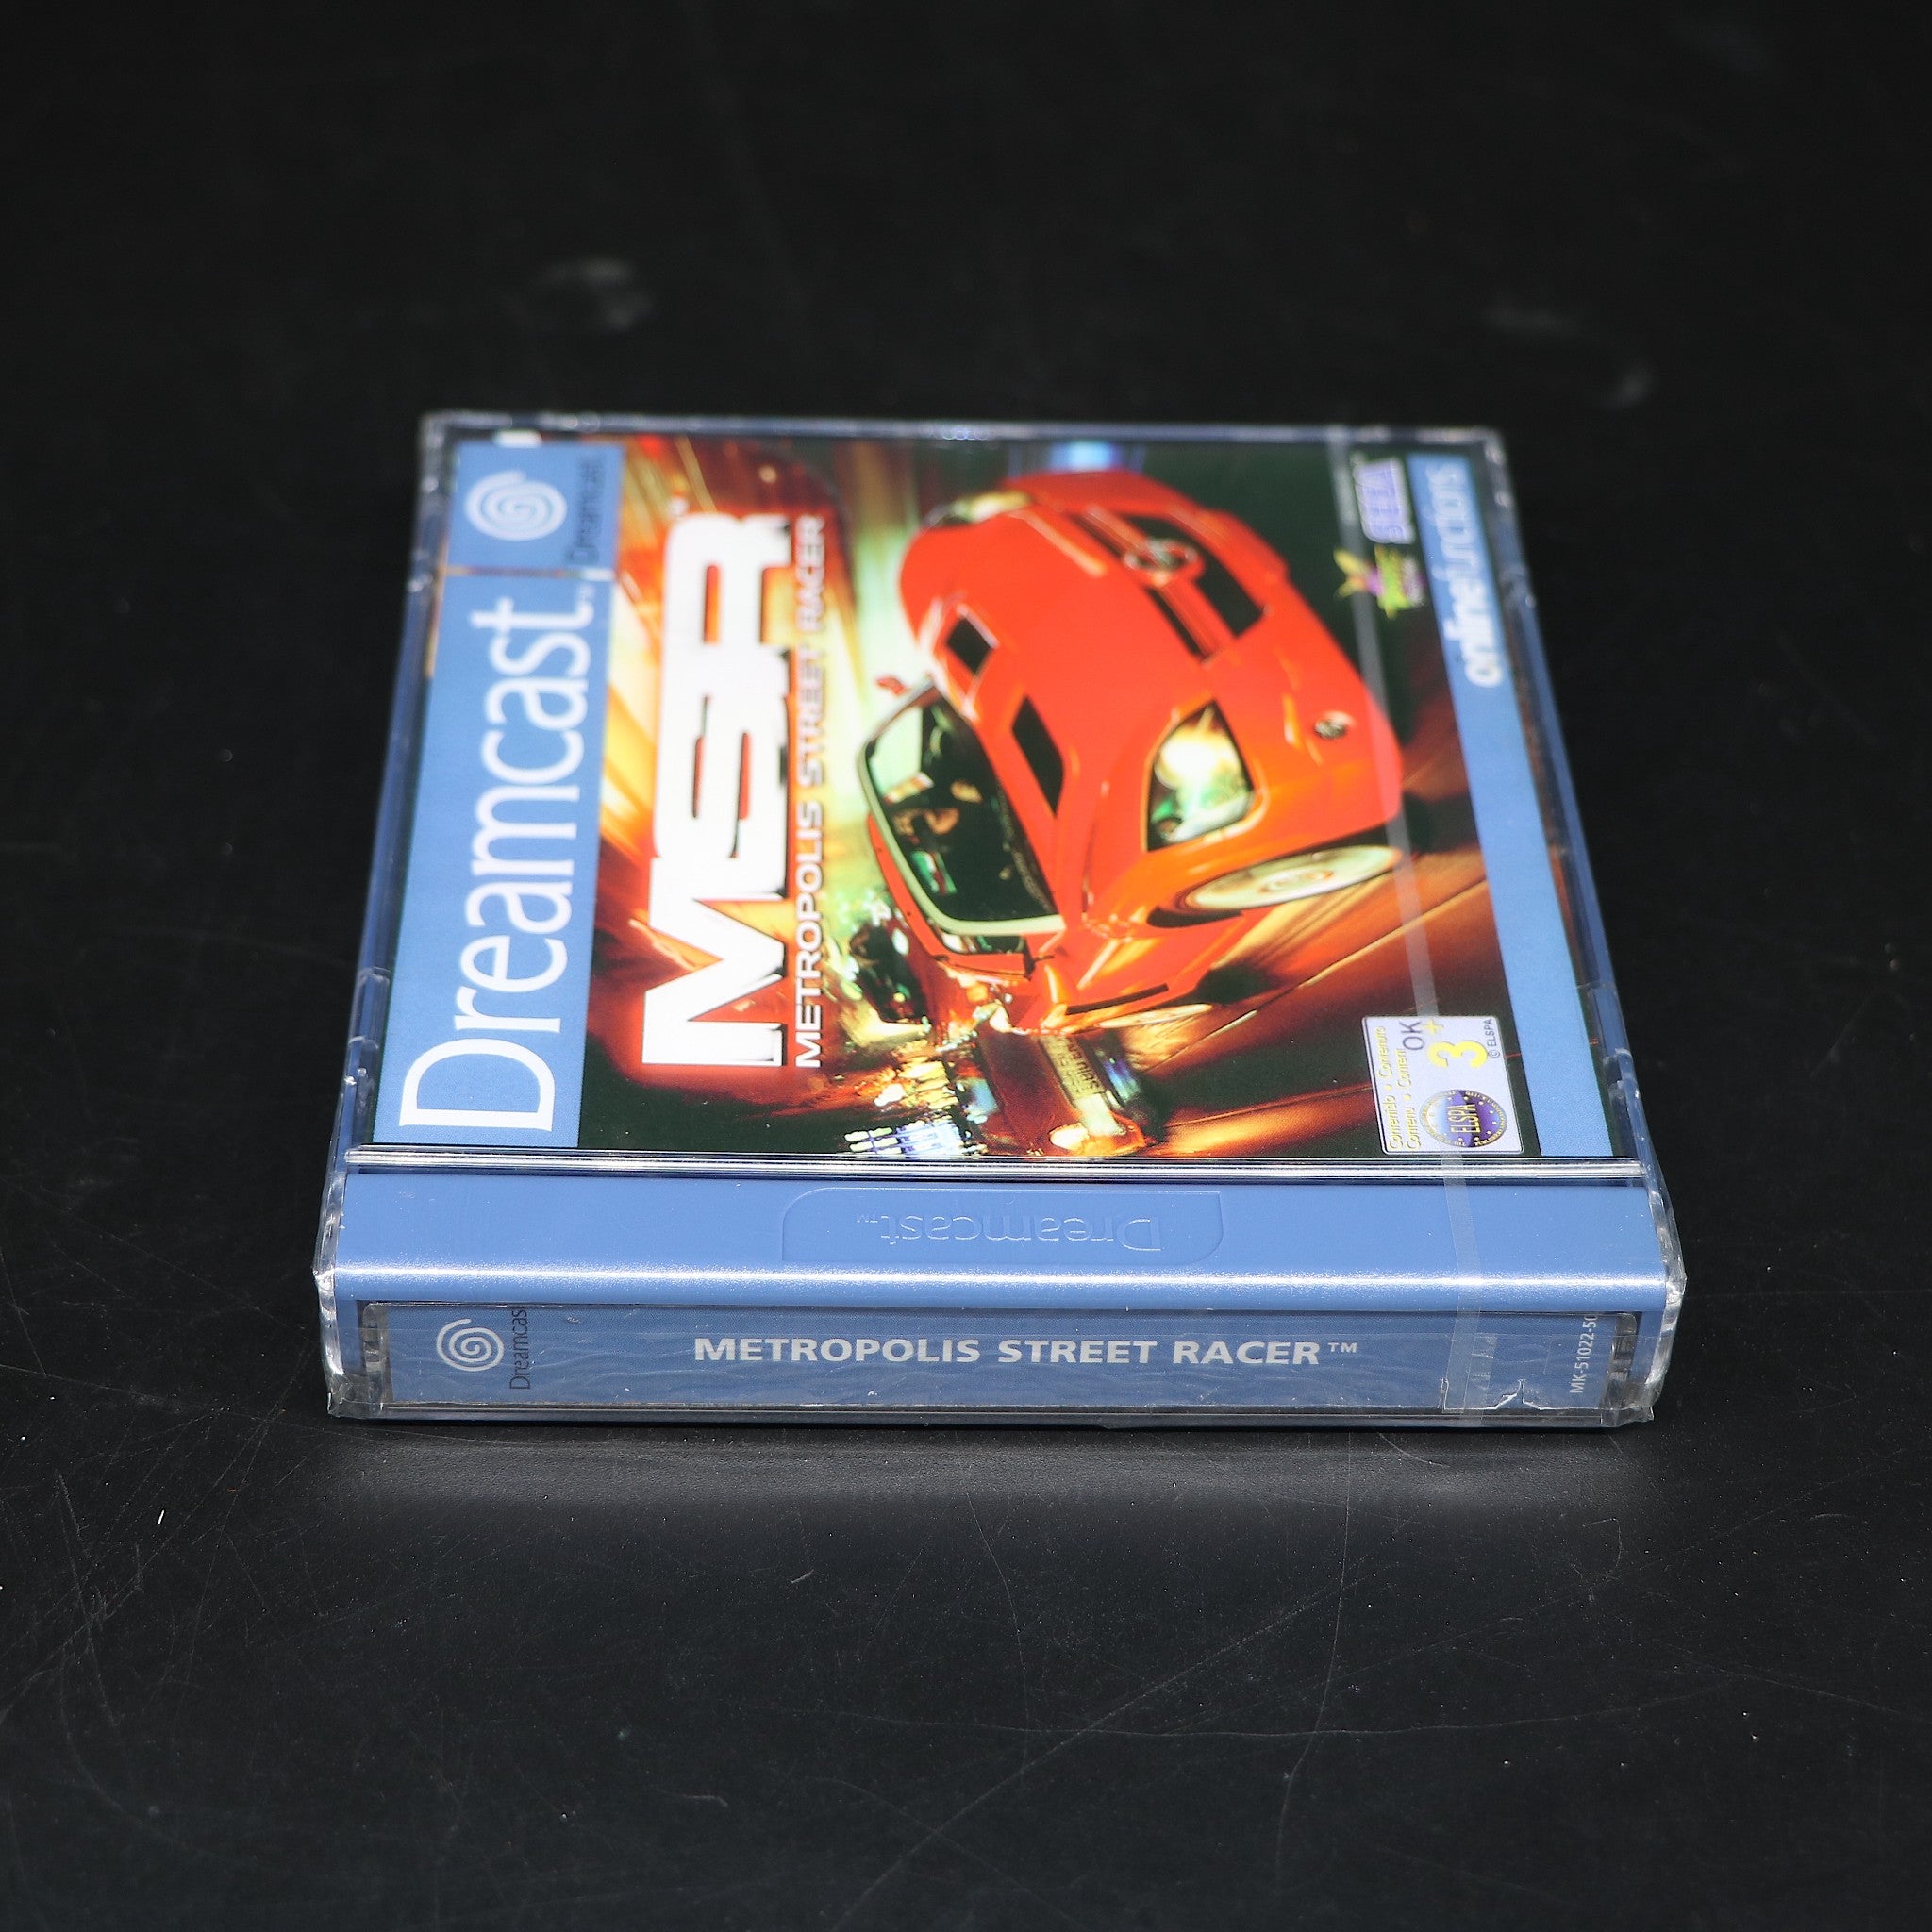 MSR Metropolis Street Racer | Sega Dreamcast Game | New & Sealed